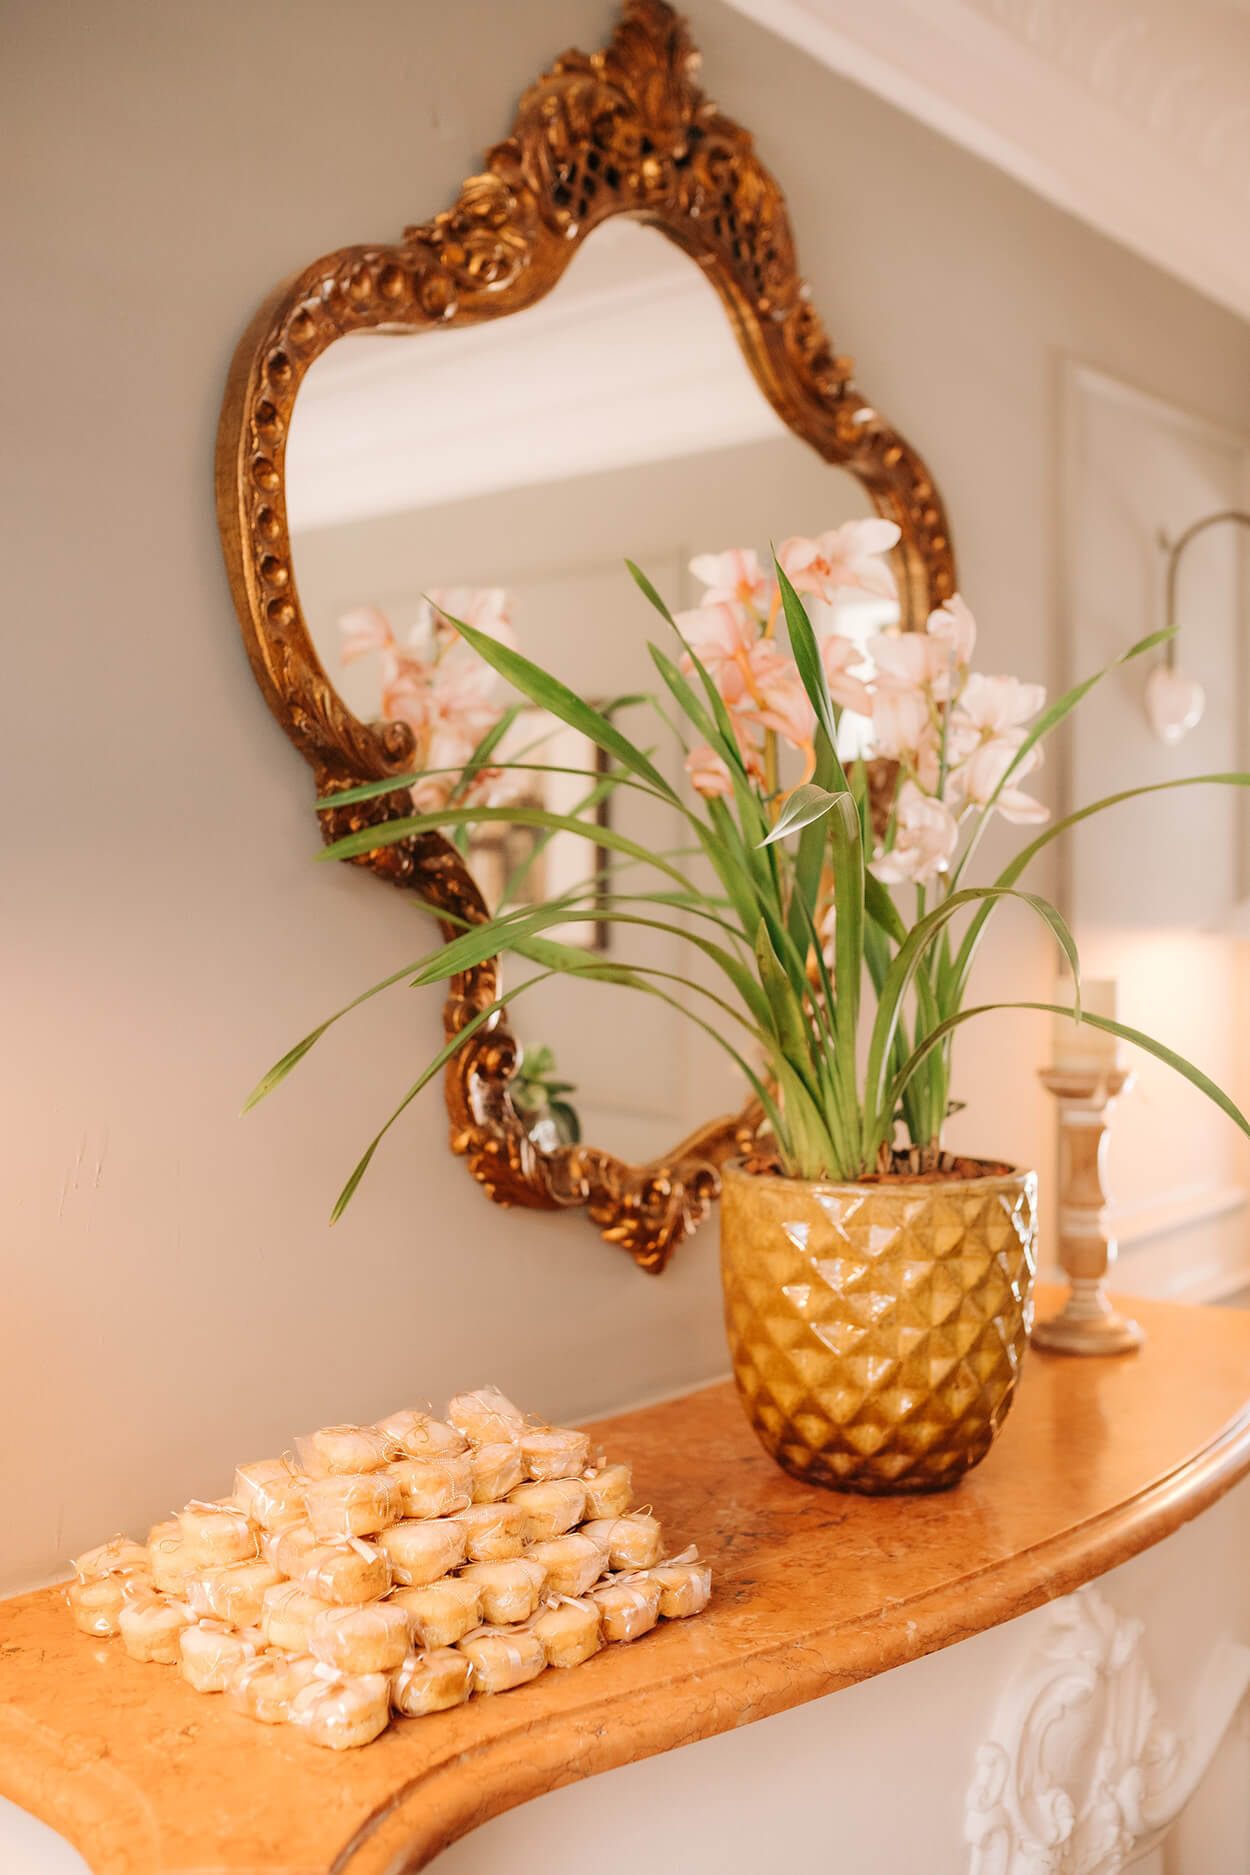 Mesa estreita na parede com bem-casados empilhados e com embalagem transparente. Vaso de flor amarelo ao lado e espelho com moldura antiga na parede